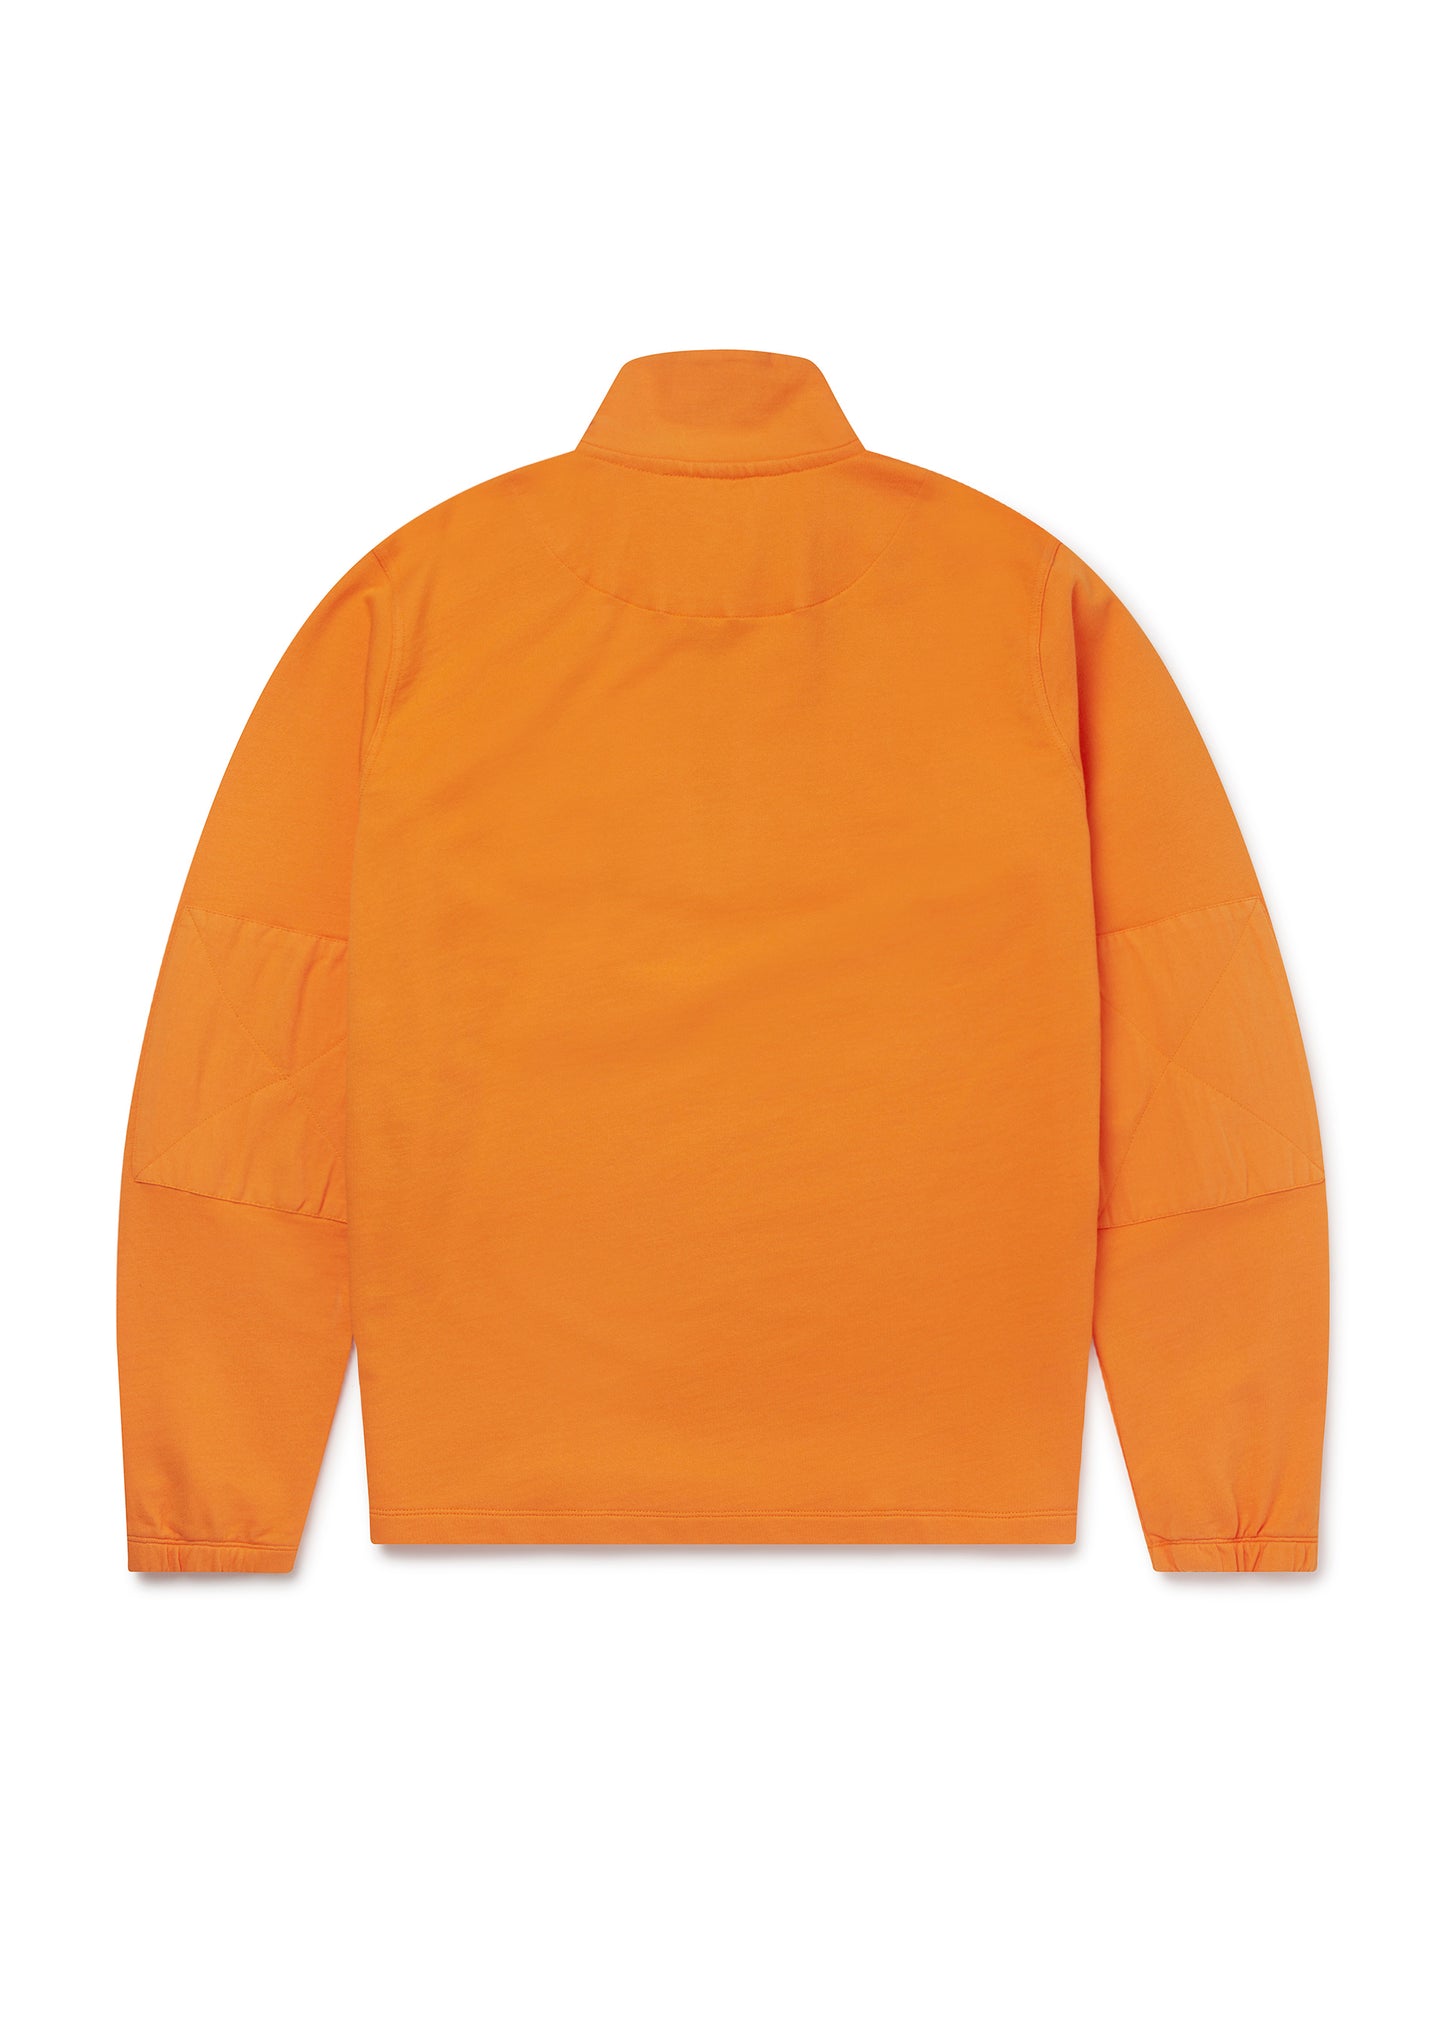 Tactical Sweatshirt in Bright Orange